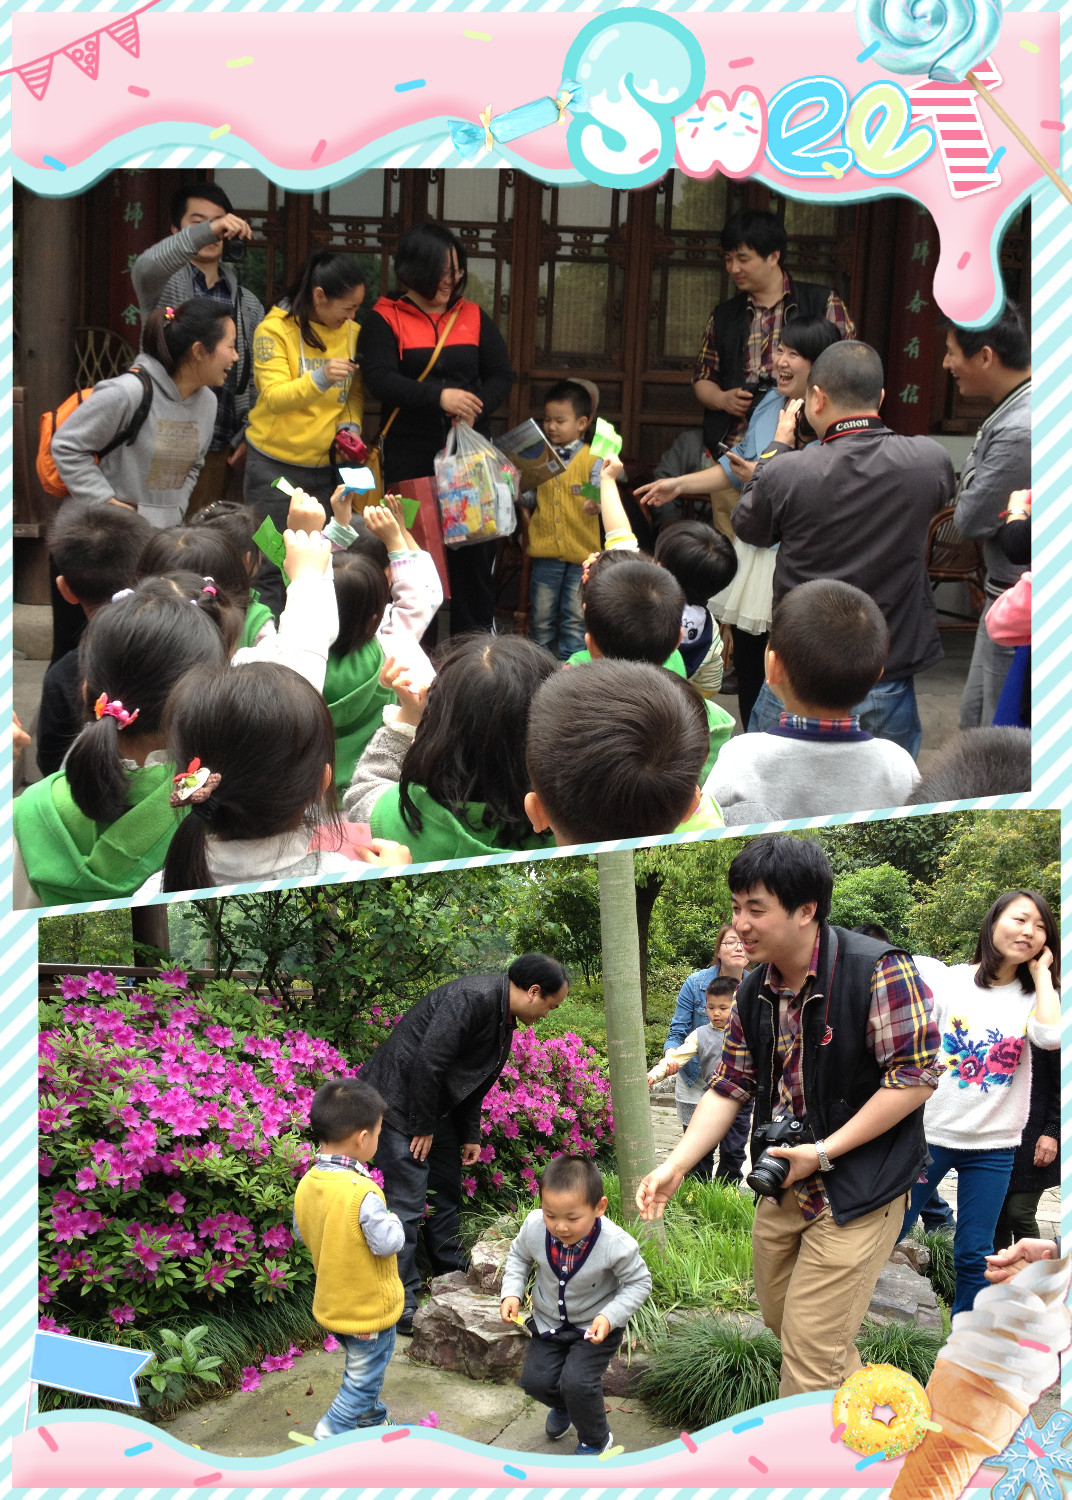 亲亲家 家长服务日 - 家园互动 - 杭州市德胜幼儿园